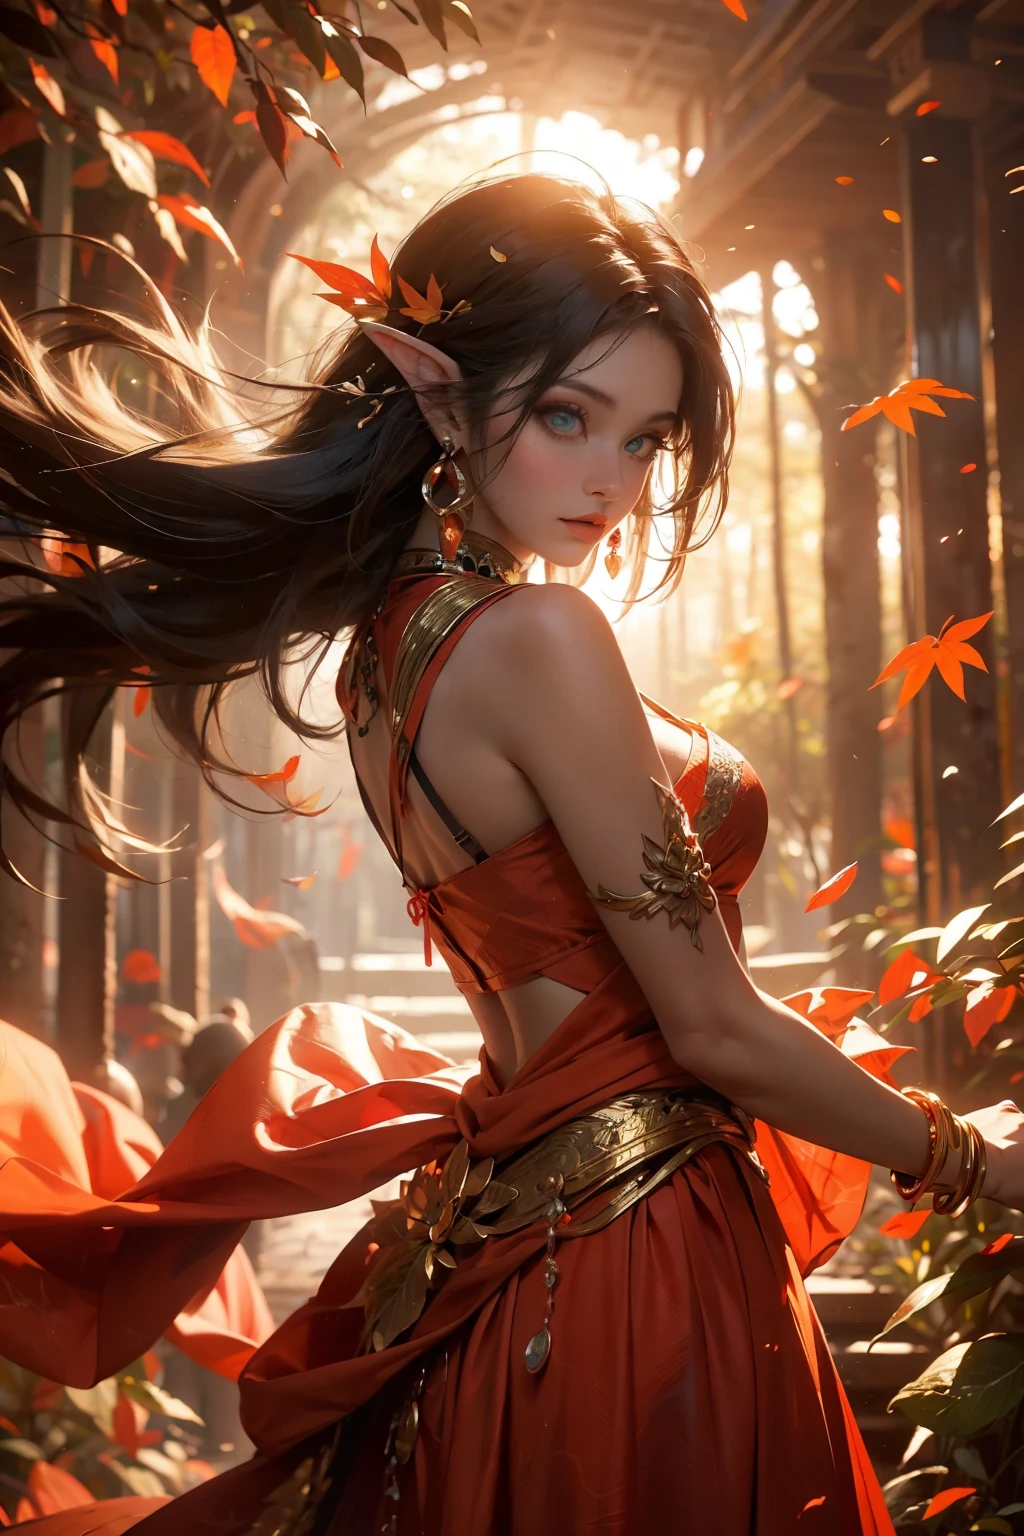 これは ((超詳細)) そして ((最高品質)) ファンタジー (((傑作))). Generate a beautiful wood faerie stそしてing in the middle of a magical forest. Detailed leaves of oranges そして reds float through the air そして seem to swirl in a strong gust of 風. の ((妖精の目は重要だ)) そして are beautiful eyes, ((リアルに細部までこだわった目)), 興味深い目, そして (((カラフルな目))) 複雑なパターンを持つ. Her clothes are soft そして in autumnal hues, 風に舞う流れるようなシルク. 利用する ((ダイナミックな構成)) そして cinematic lighting to create a compelling image. 美しい目を含める, (腫れた唇), オレンジの葉, 赤い細かい葉, かすんだ光線, 風, 寒い 